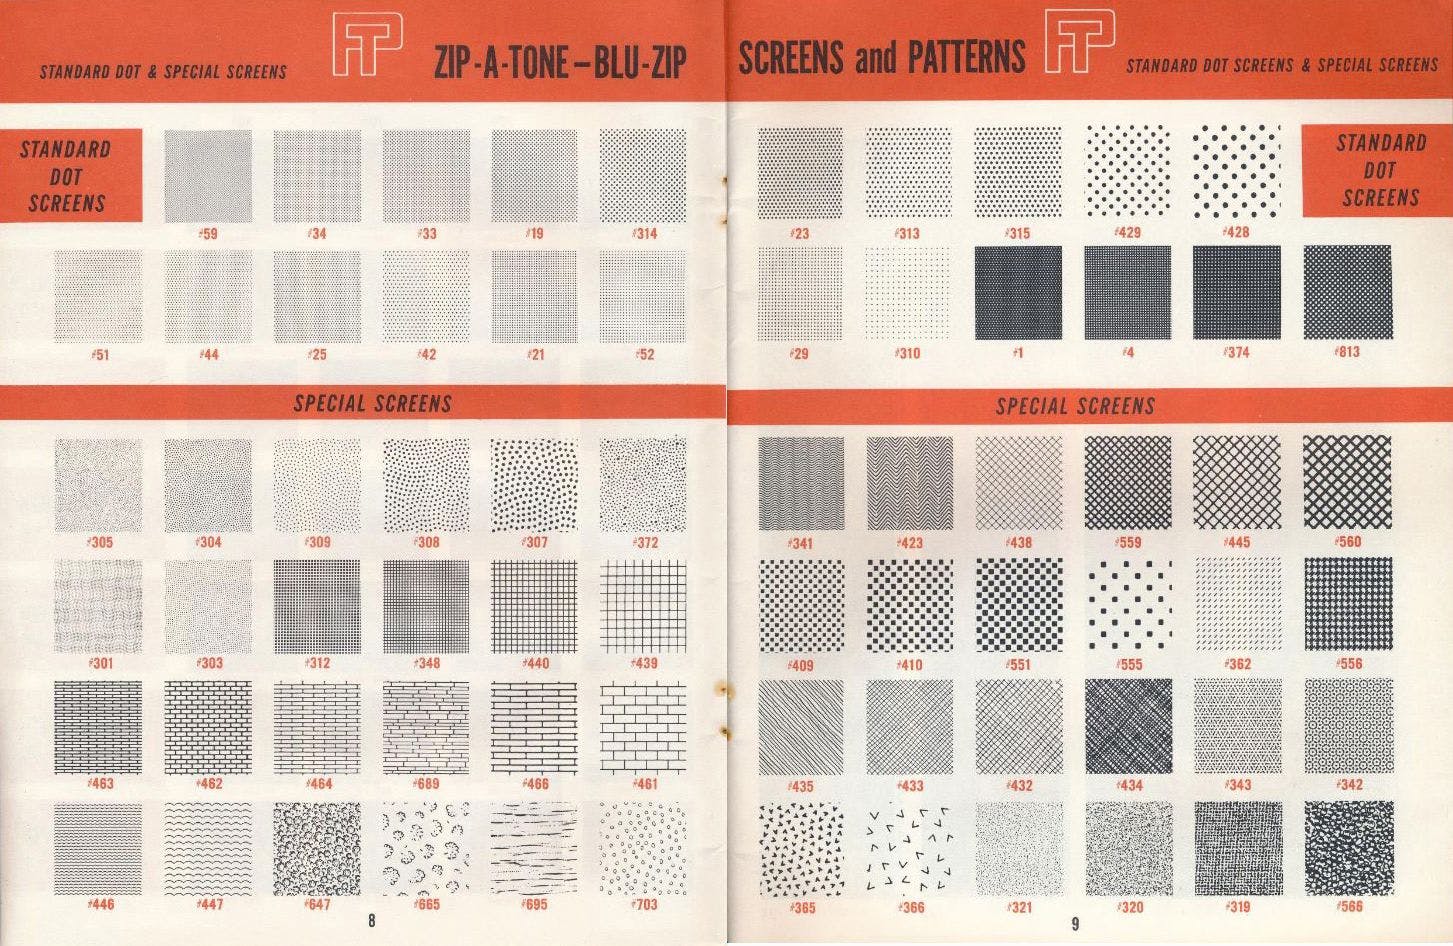 Voorbeelden van Zips met rasters en patronen in een catalogus van Zip-A-Tone, 1964. Bron: https://archive.org/details/TNM_Zip-A-Tone_Blu-Zip_screens_and_colors_catalog_20180219_1007/page/n9/mode/2up  